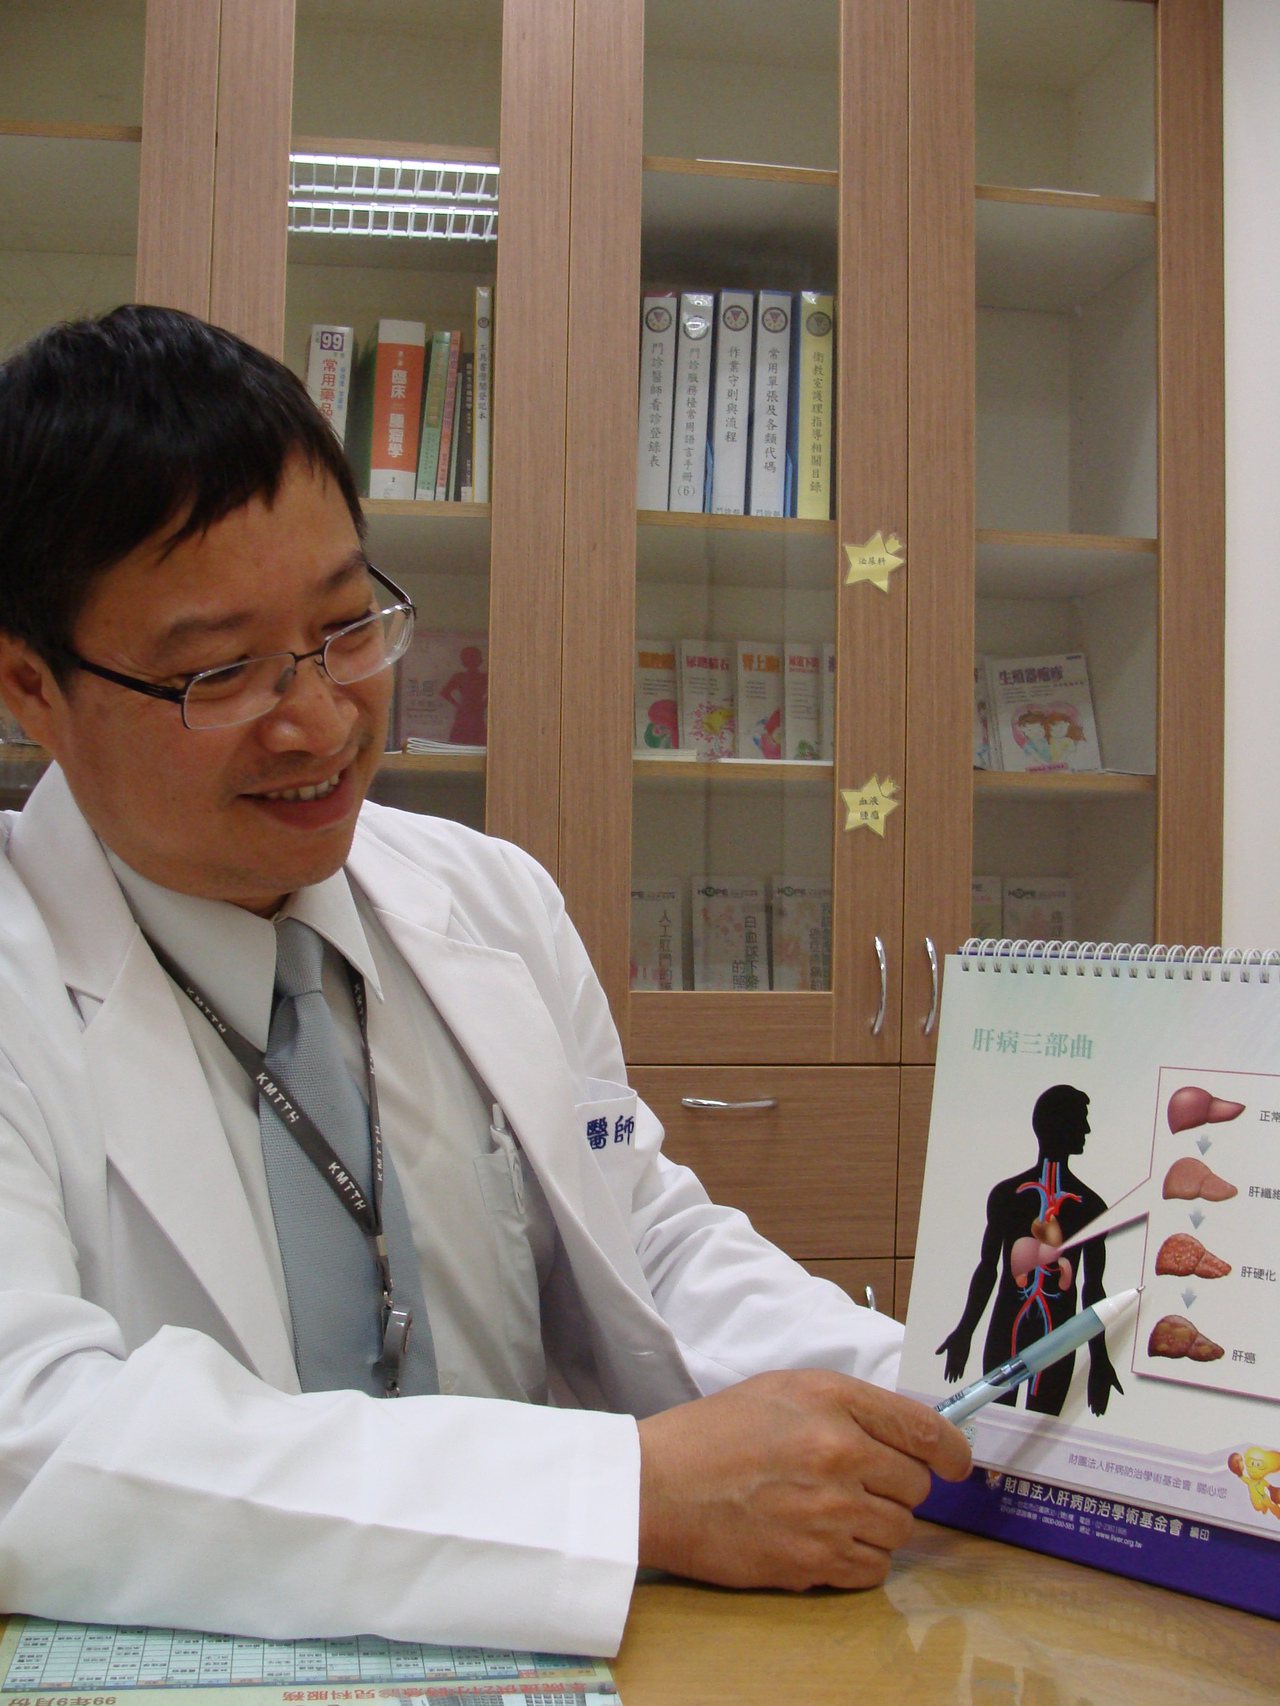 高雄醫學大學論文登上國際肝臟病學雜誌。